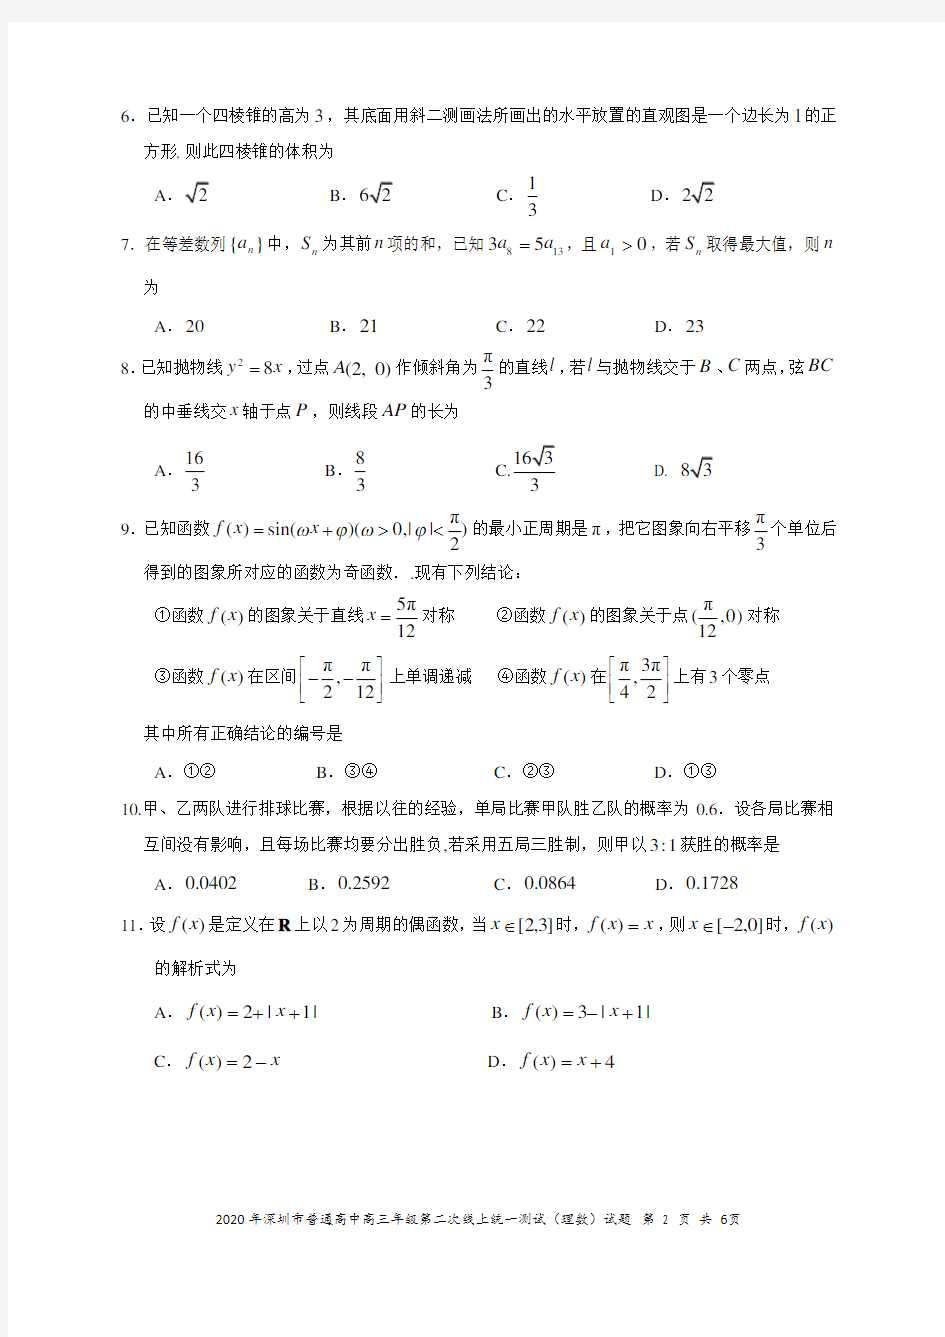 2020深圳线上二模理科数学(理科)